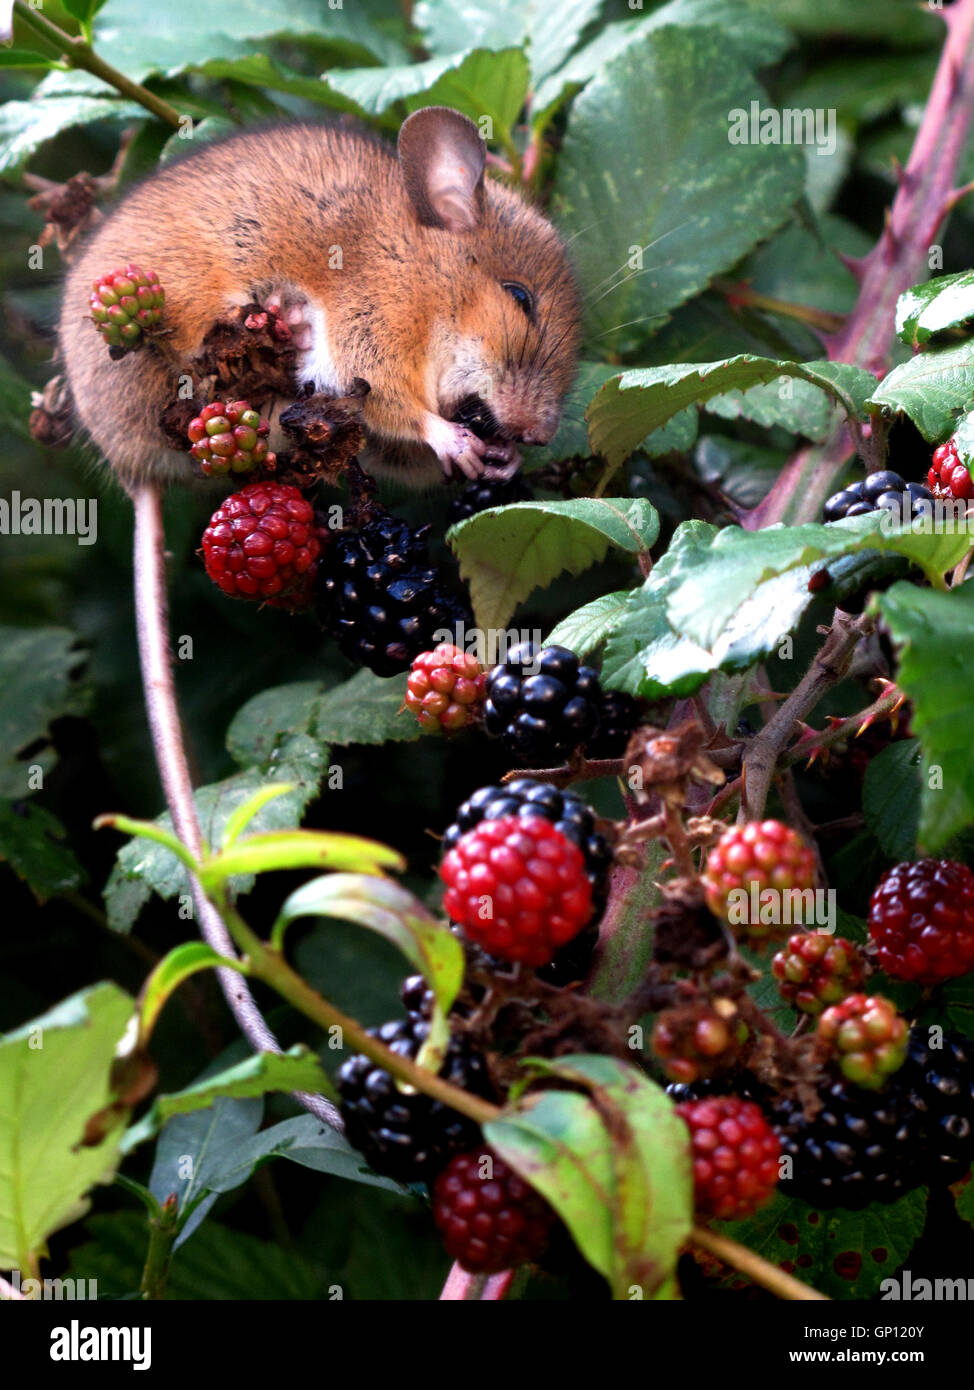 Dormouse eating blackberries Stock Photo